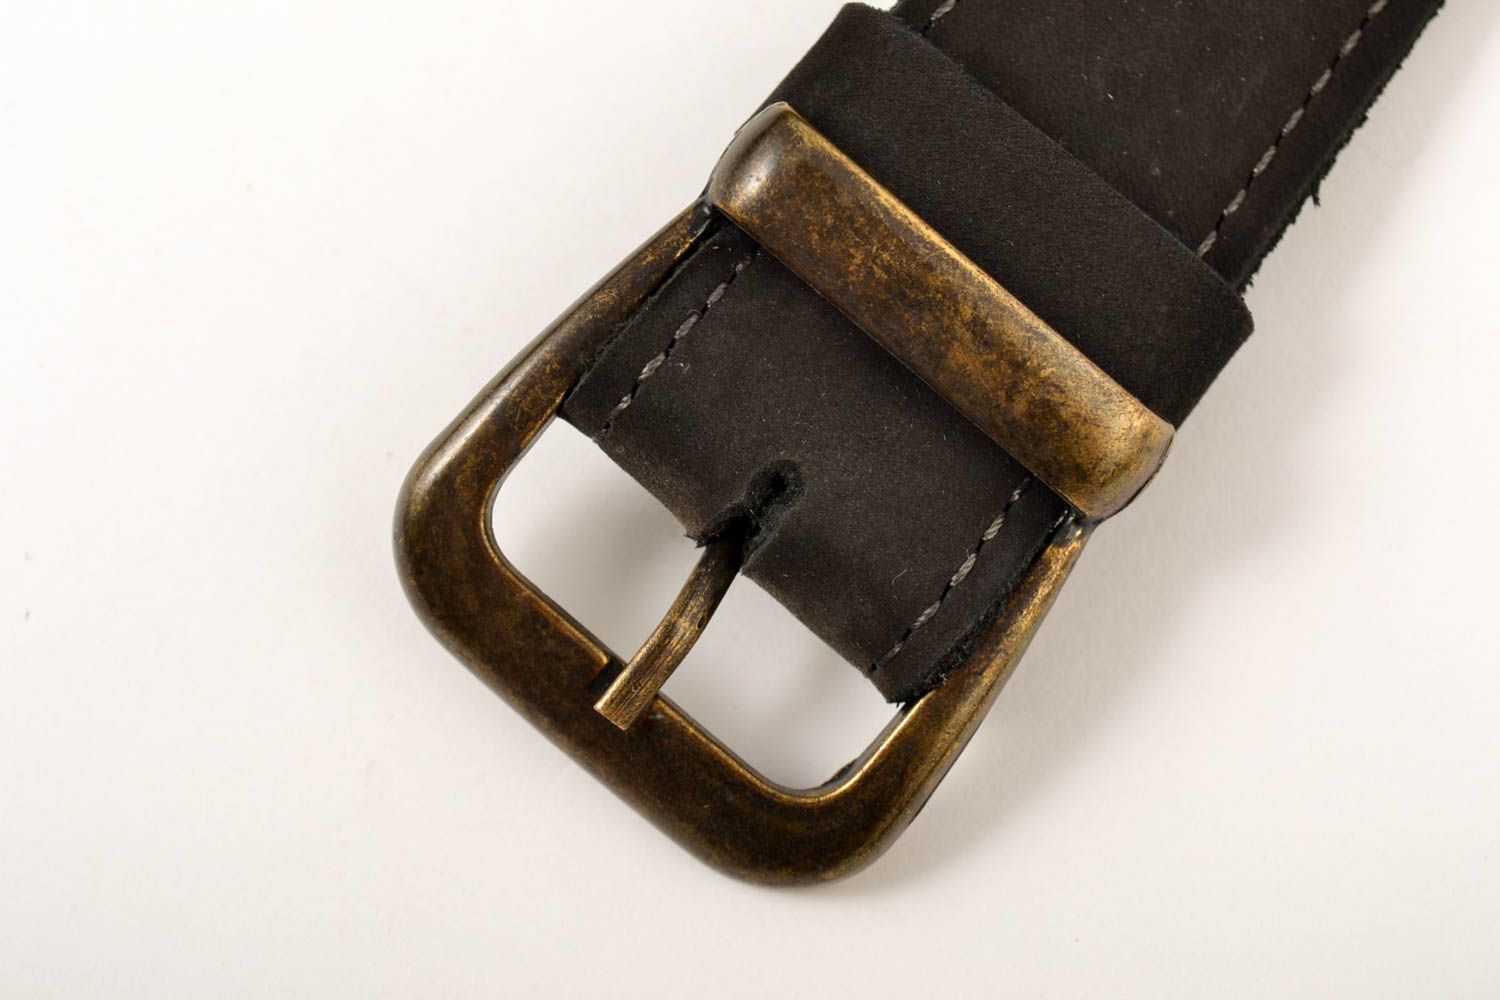 Cinturón de cuero hecho a mano ropa masculina estilosa accesorio de moda foto 3